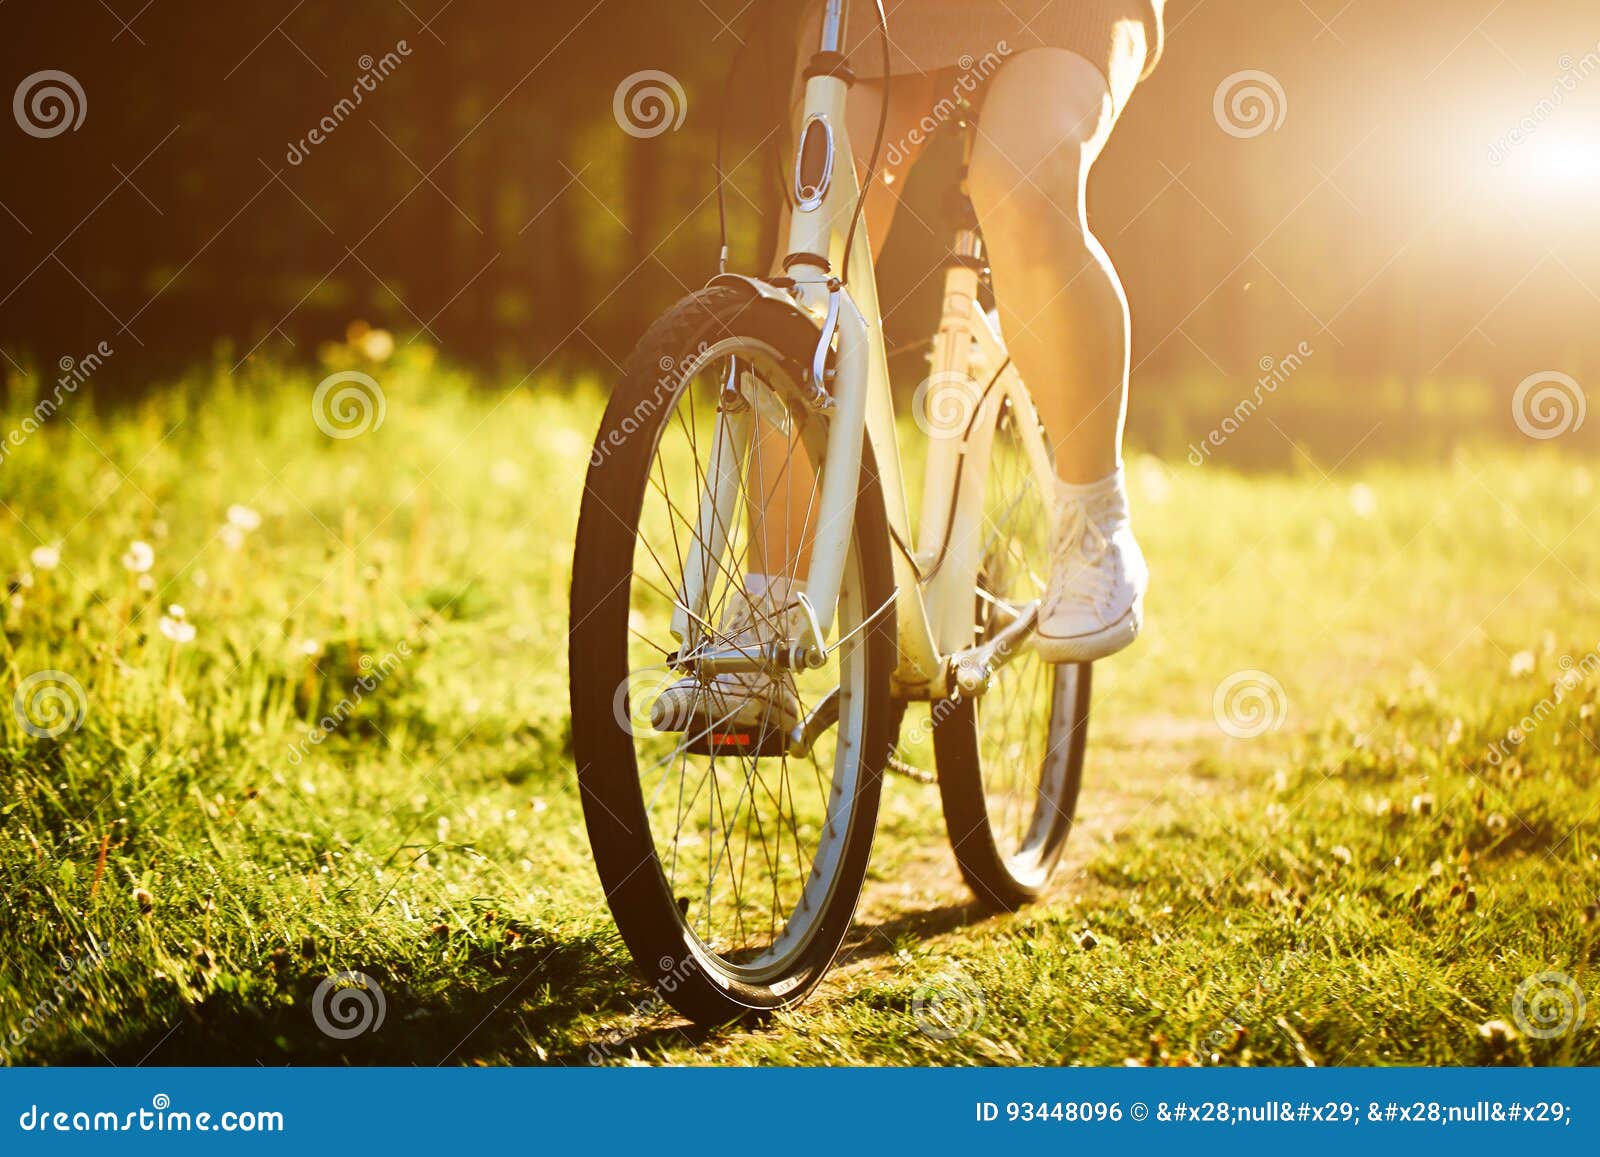 nonne fährt fahrrad